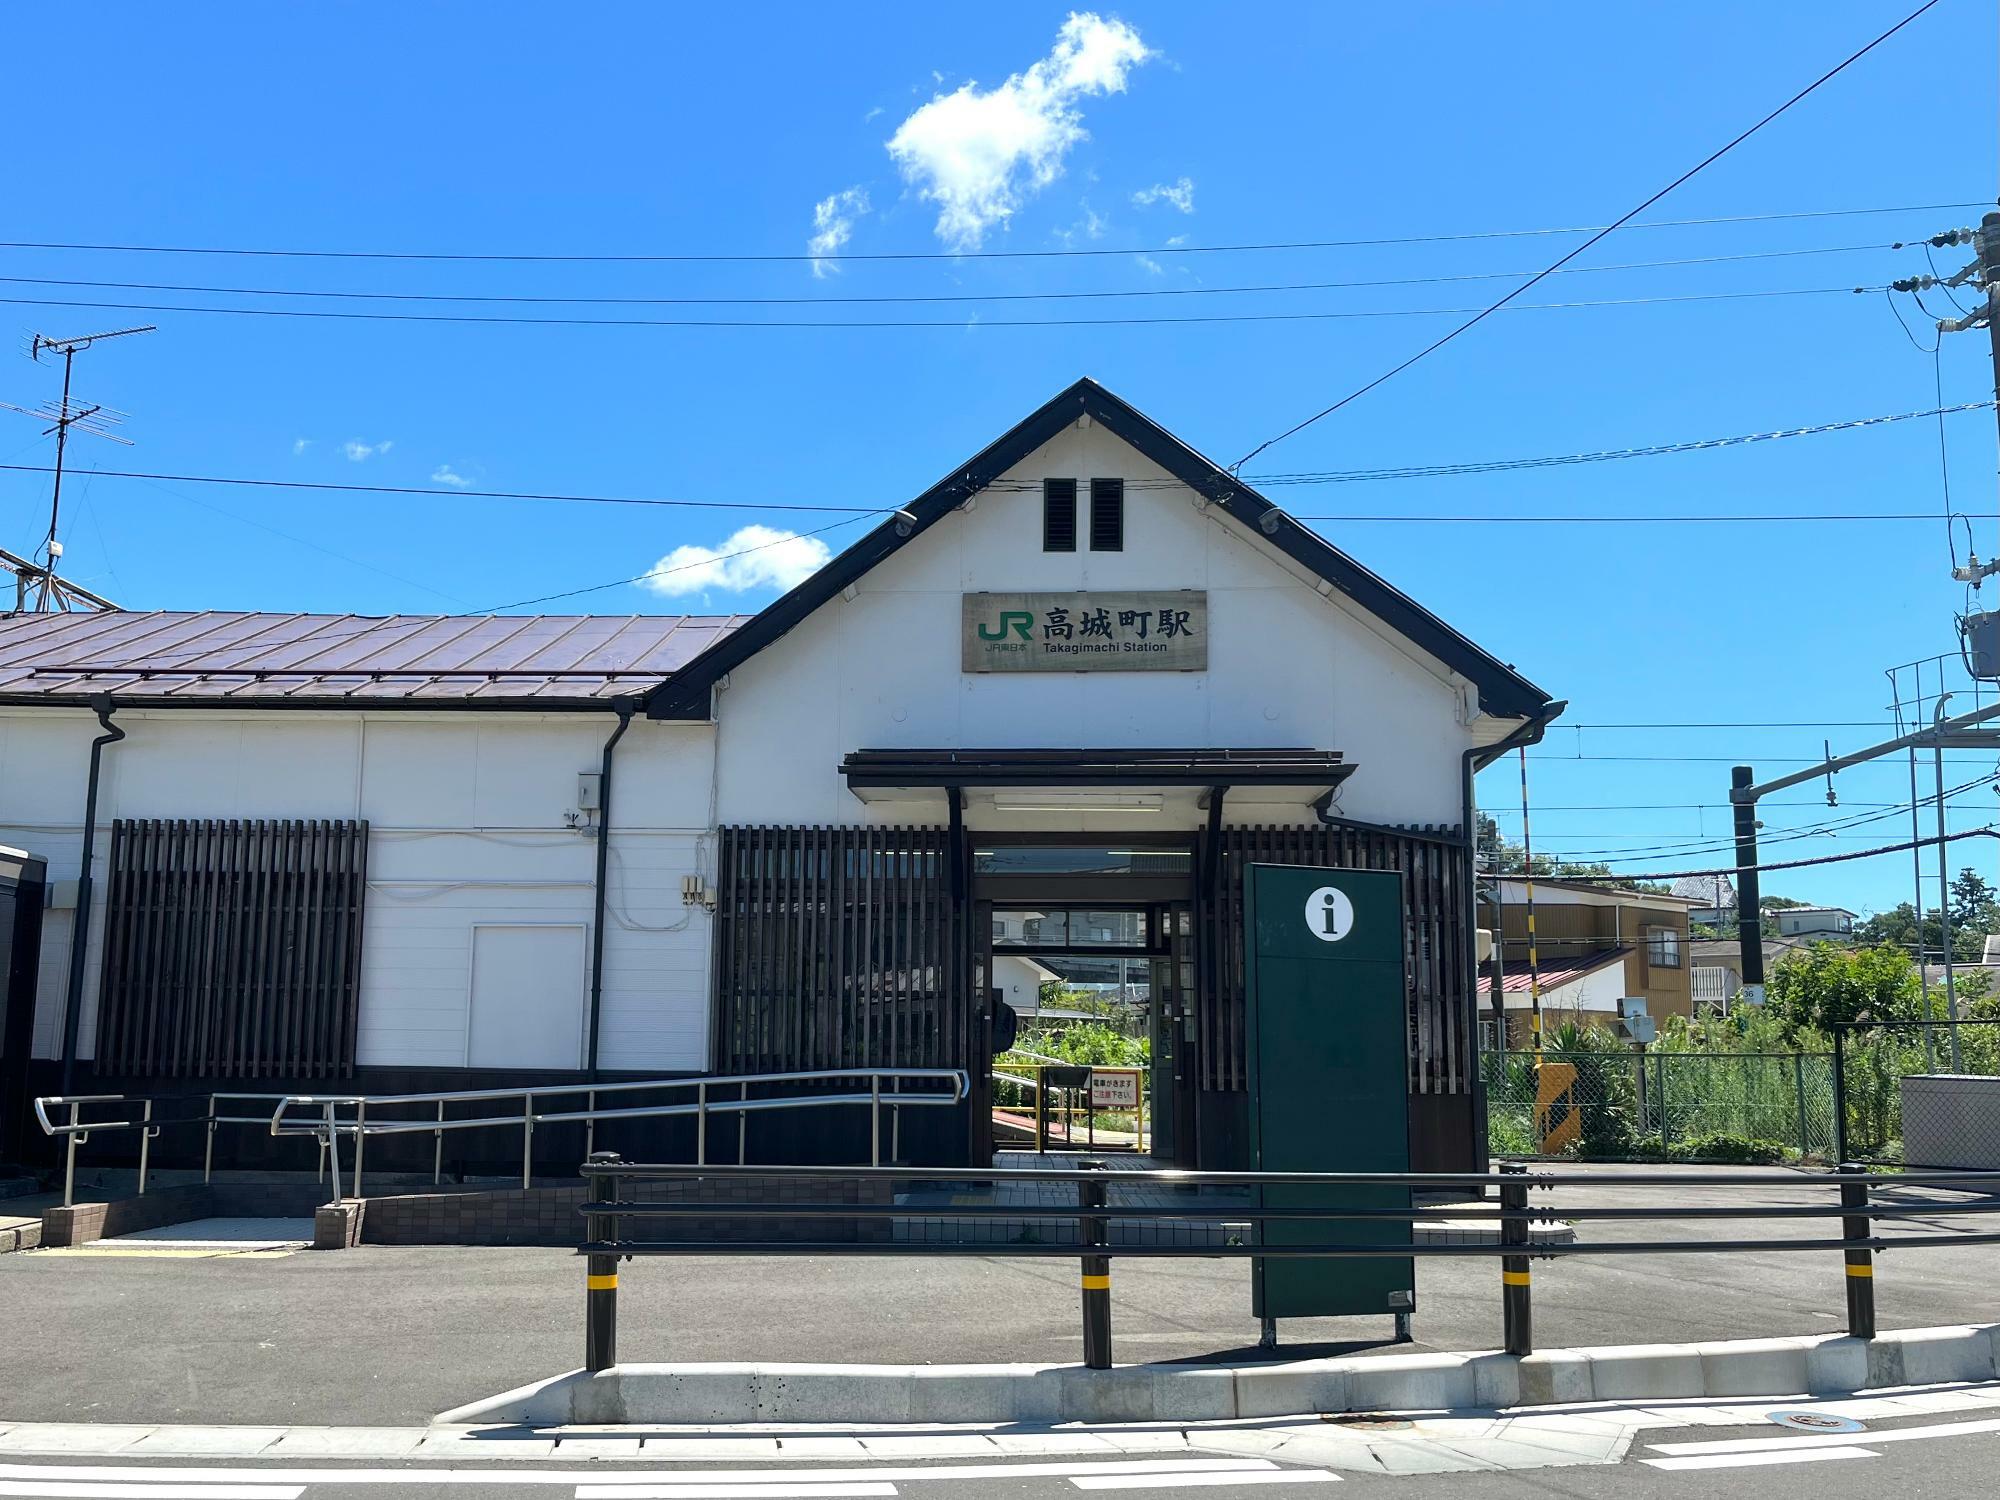 ▲ 「JR高城町駅」の駅舎は小さな外観だけれども、正面は白塗りで渋さのある大人の表情をしている